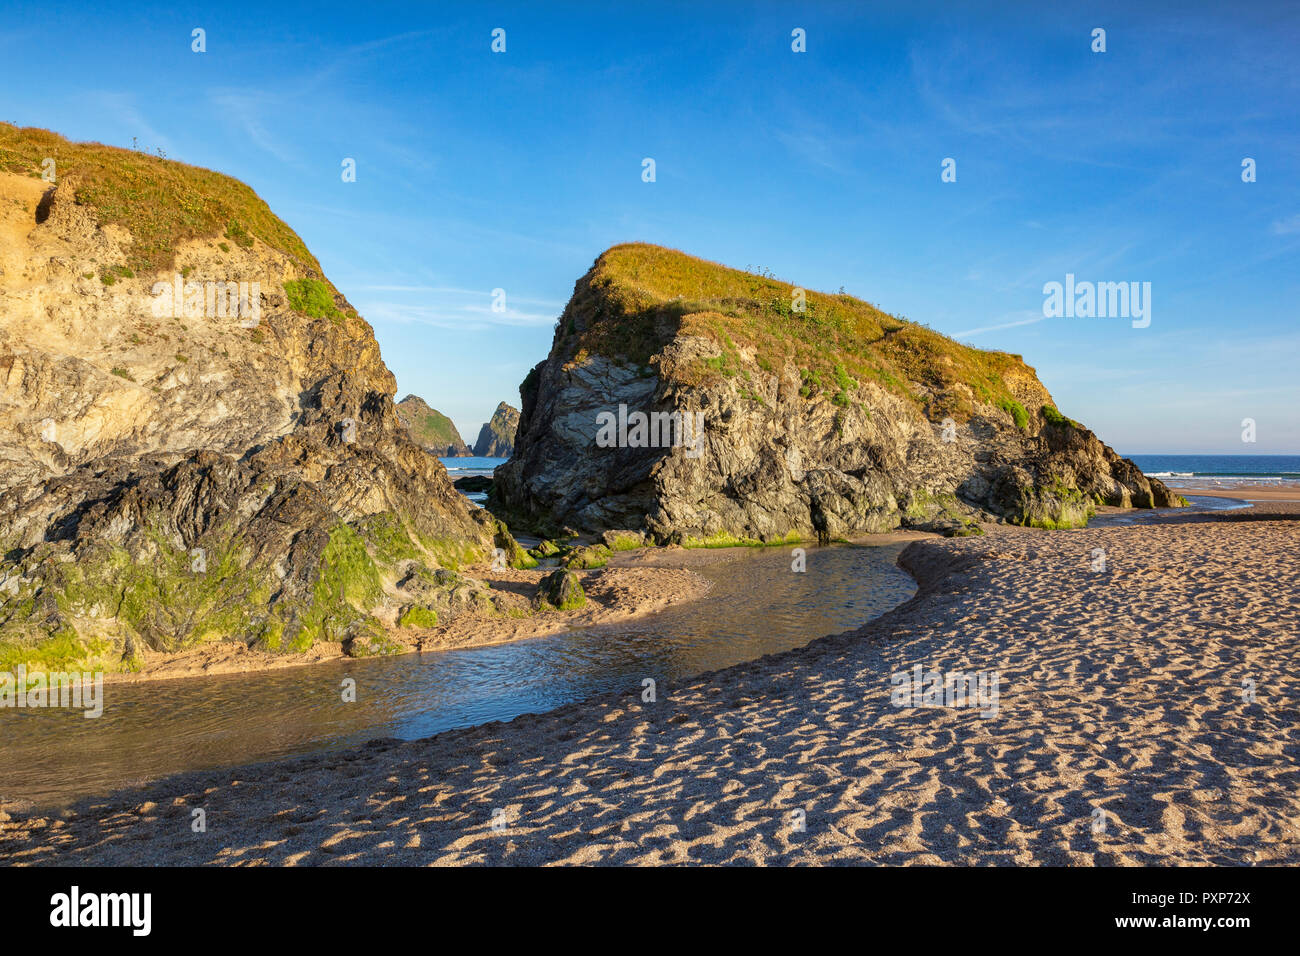 Rochers sur la plage de St Asaph, avec une vue à travers les roches de charretiers, Cornwall, UK Banque D'Images